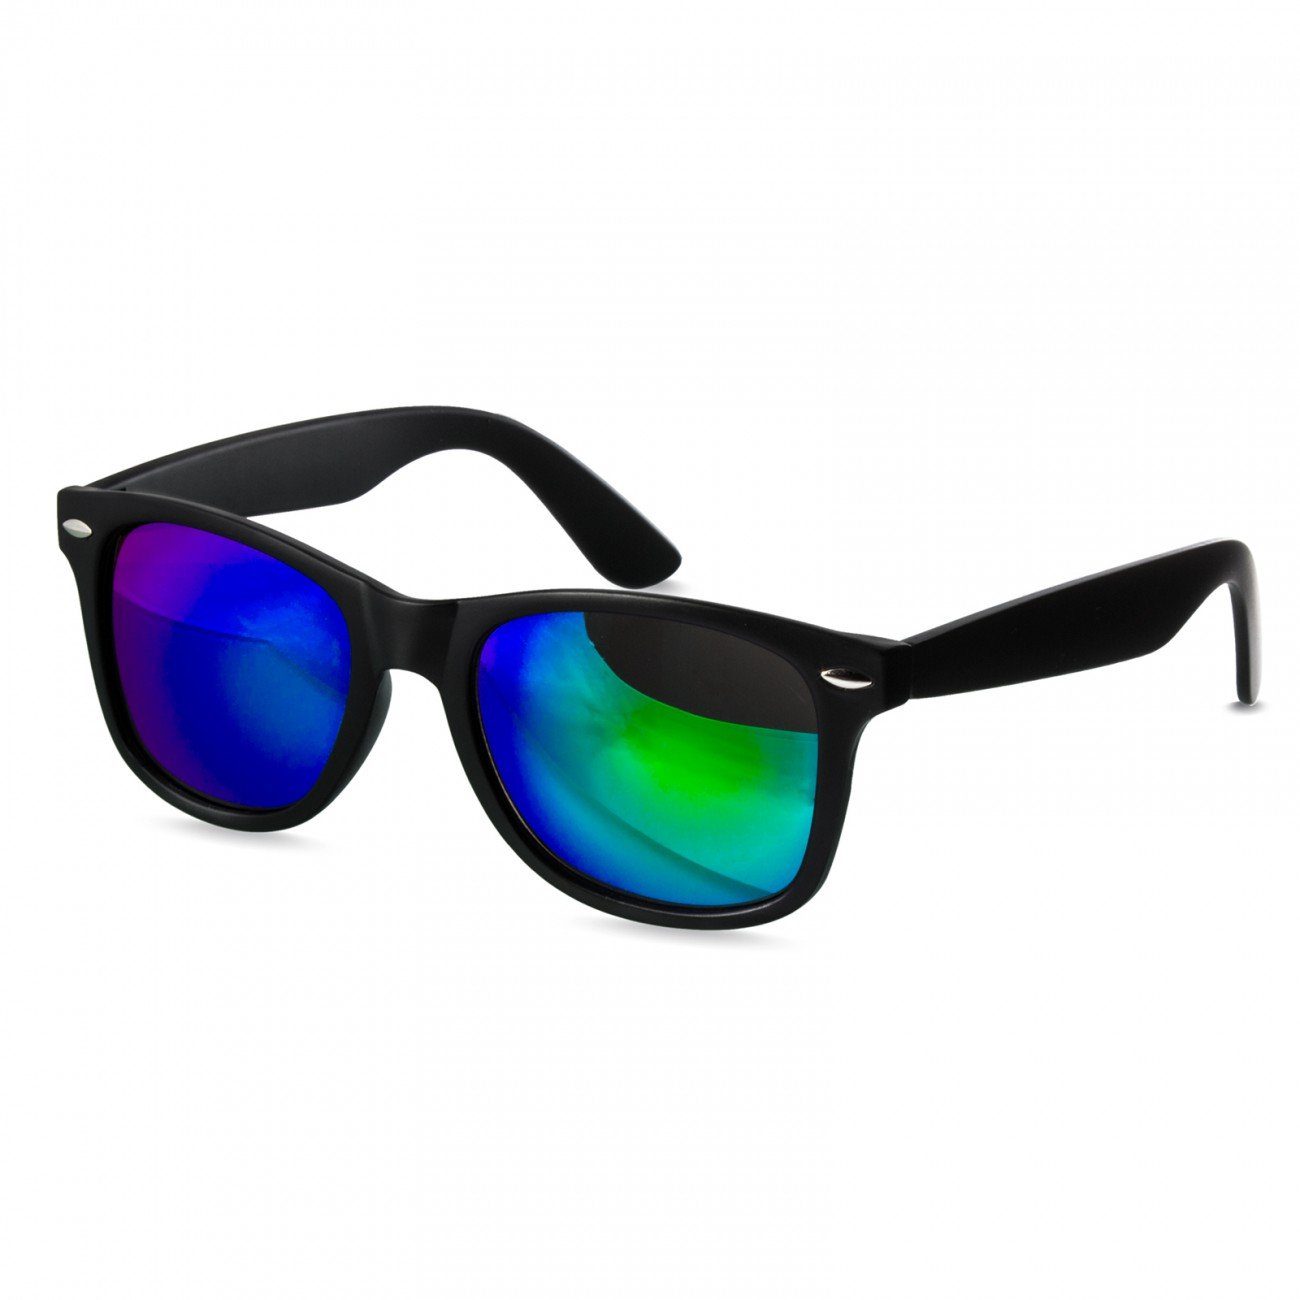 grün schwarz RETRO Sonnenbrille / Caspar Damen Designbrille verspiegelt SG017 gold matt kpl.